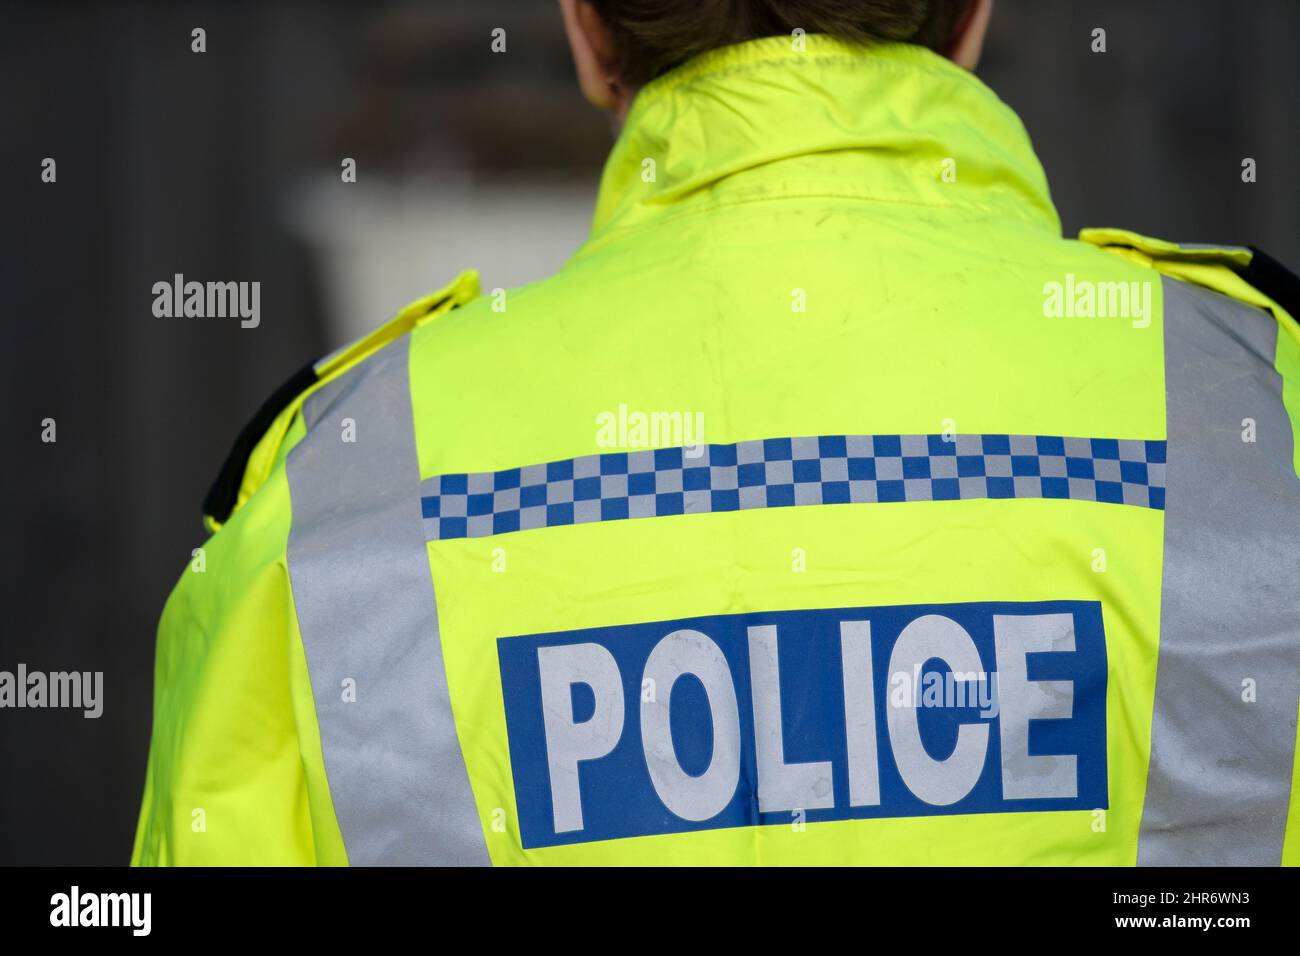 Eine britische Polizistin, die eine reflektierende Jacke trägt. Das Bild zeigt die Rückseite des Offiziers und die Polizeimarkierungen sind sichtbar Stockfoto